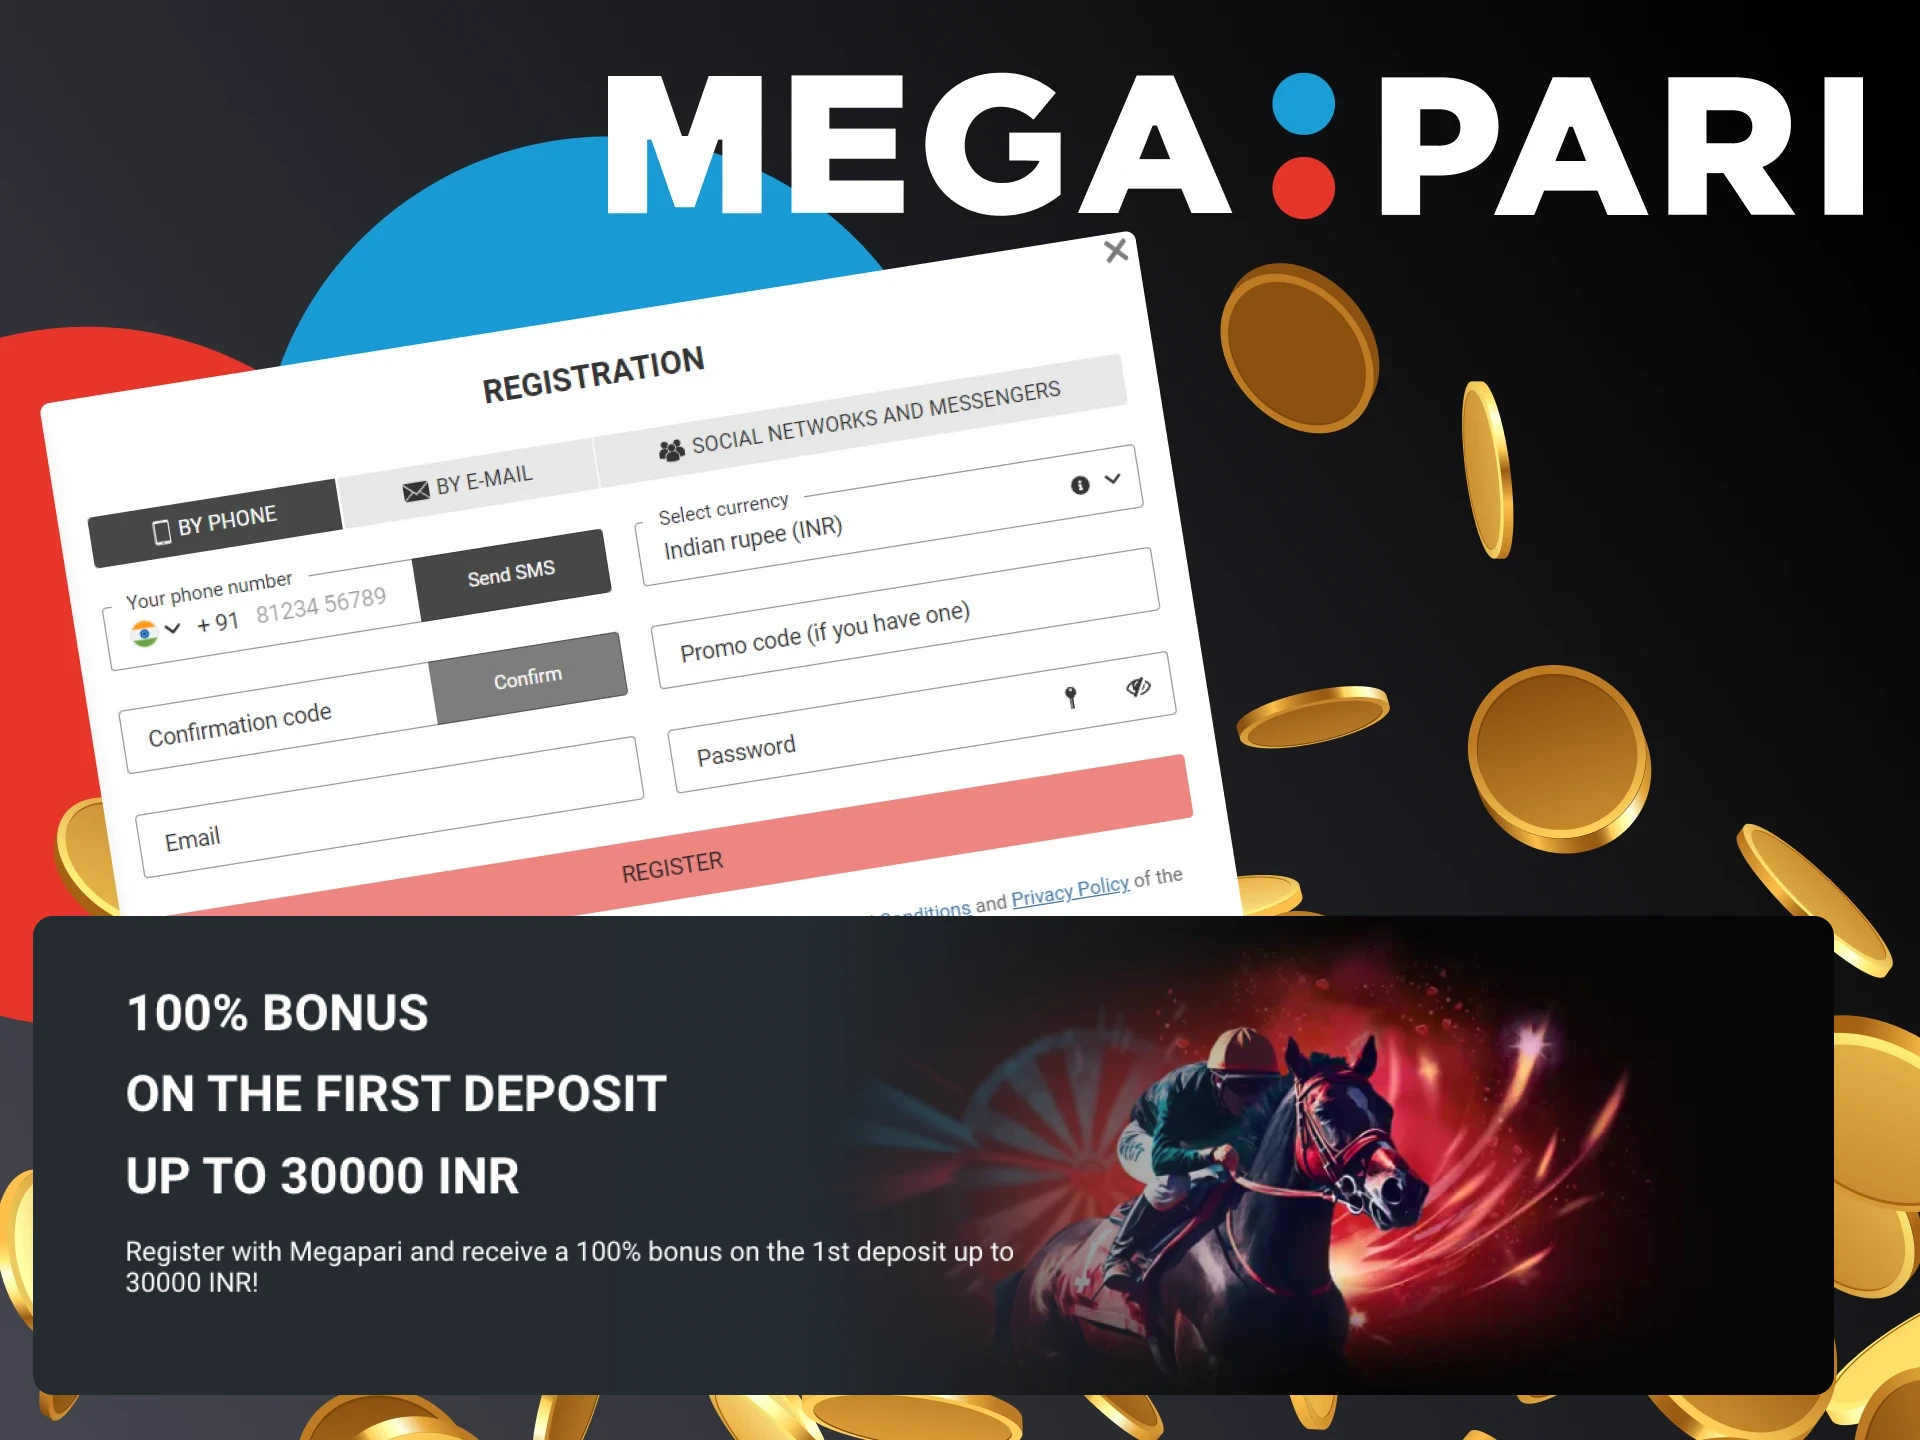 Get your first deposit bonus after Megapari registration.